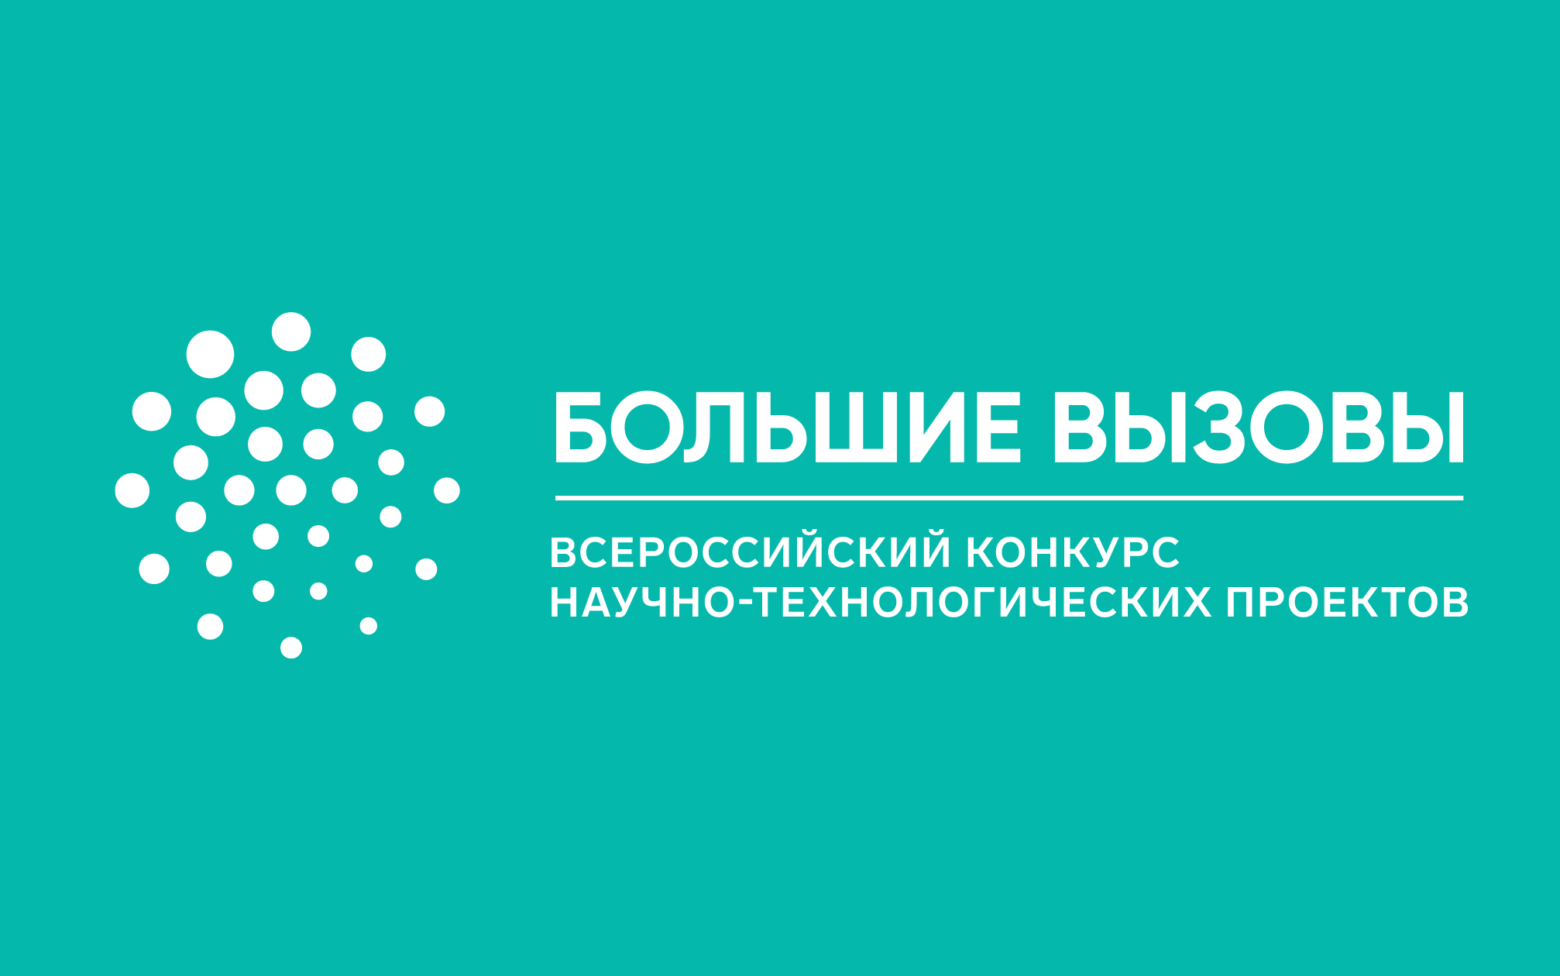 Всероссийский конкурс научно-технологических проектов "Большие вызовы"